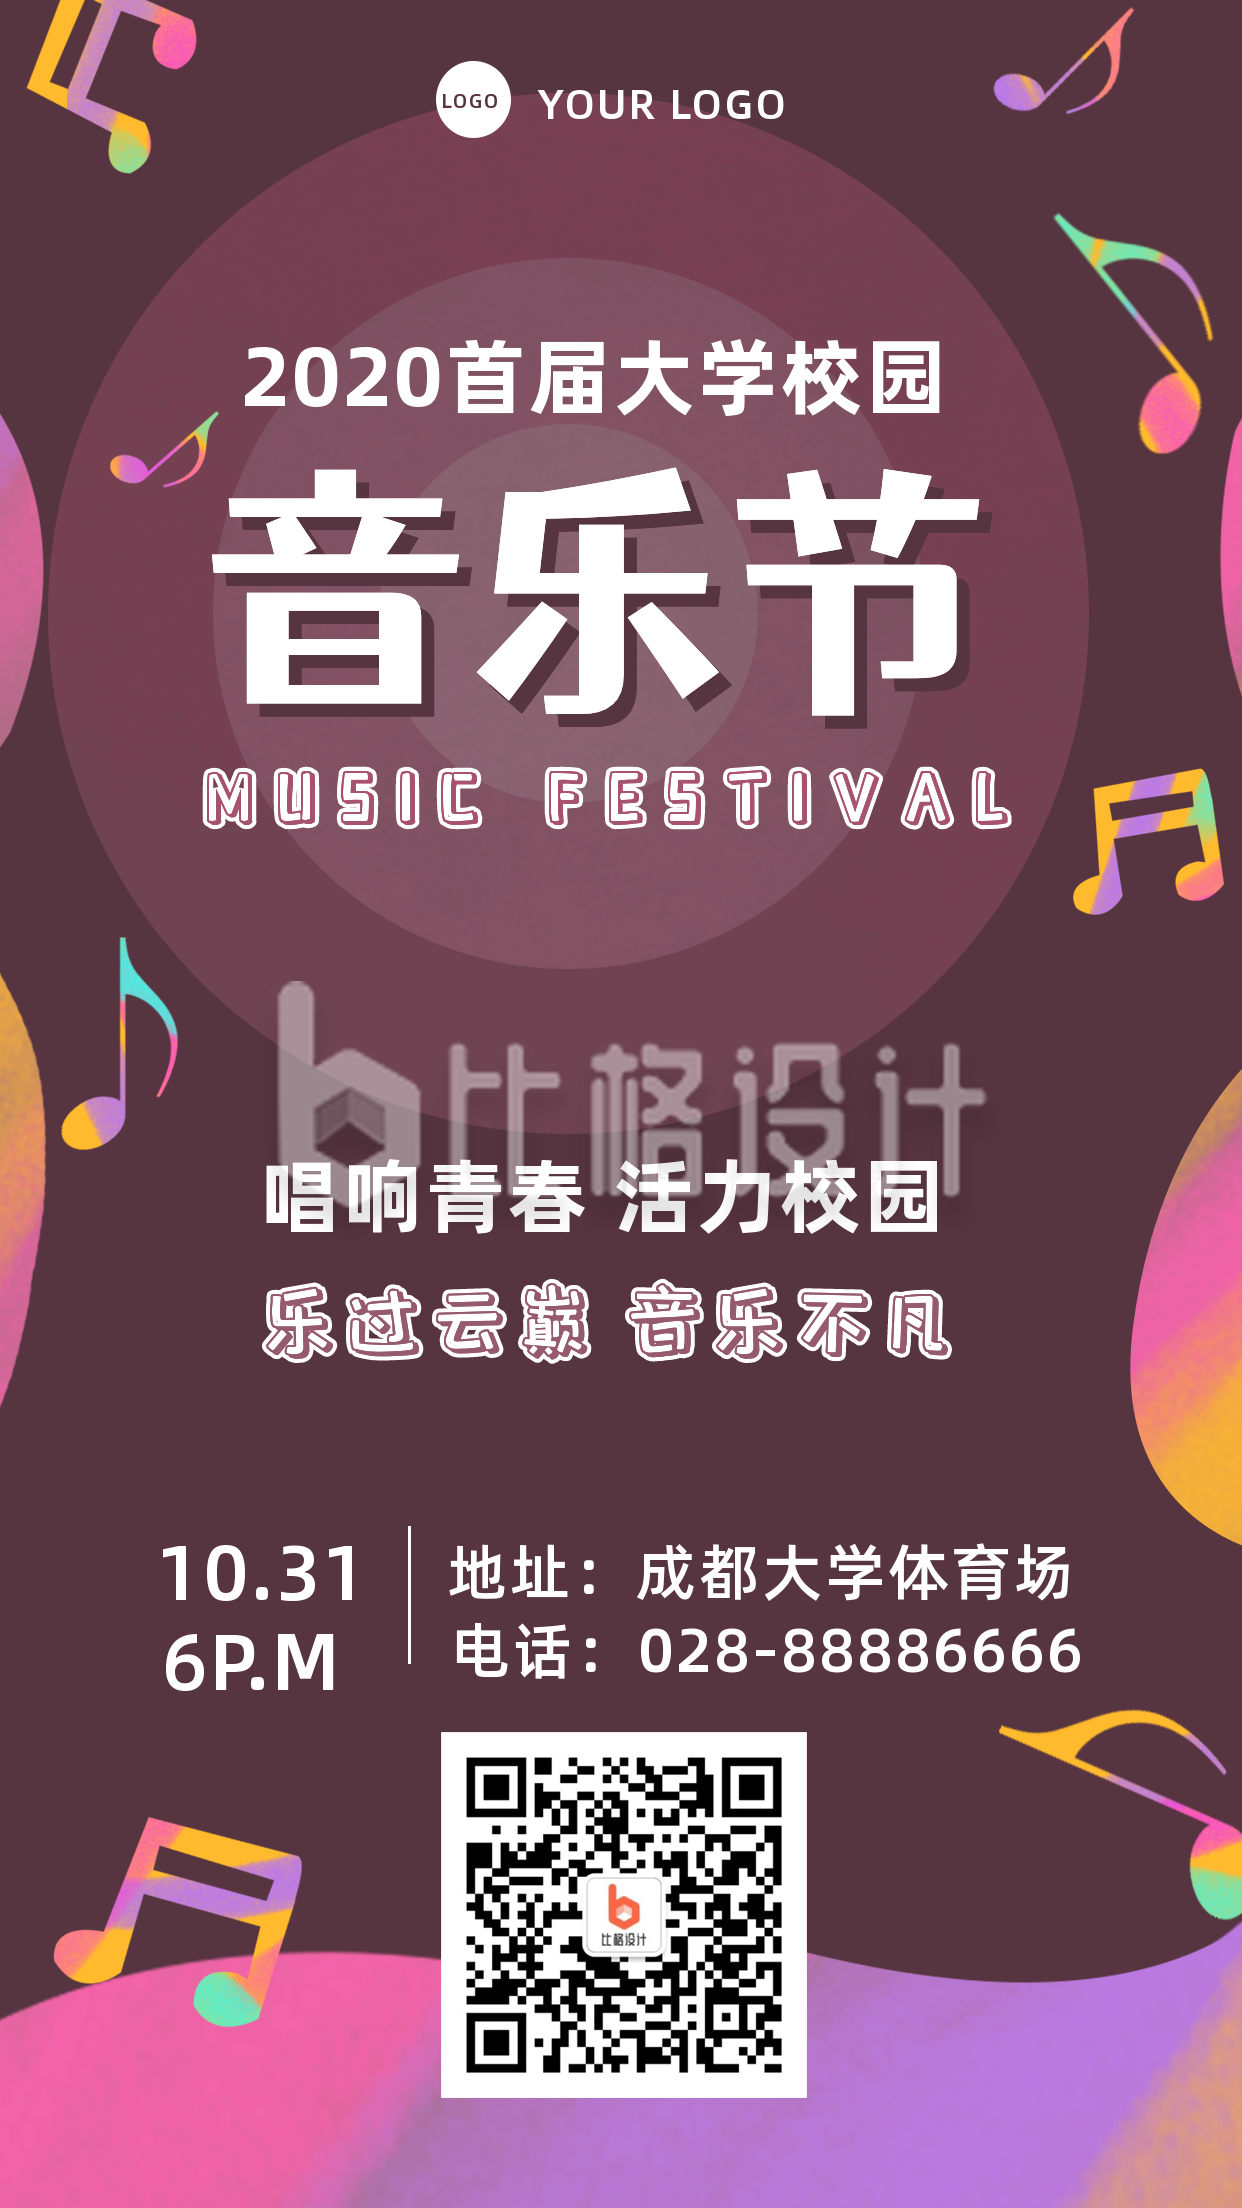 紫色背景校园音乐节晚会迎新俱乐部活动宣传手机海报